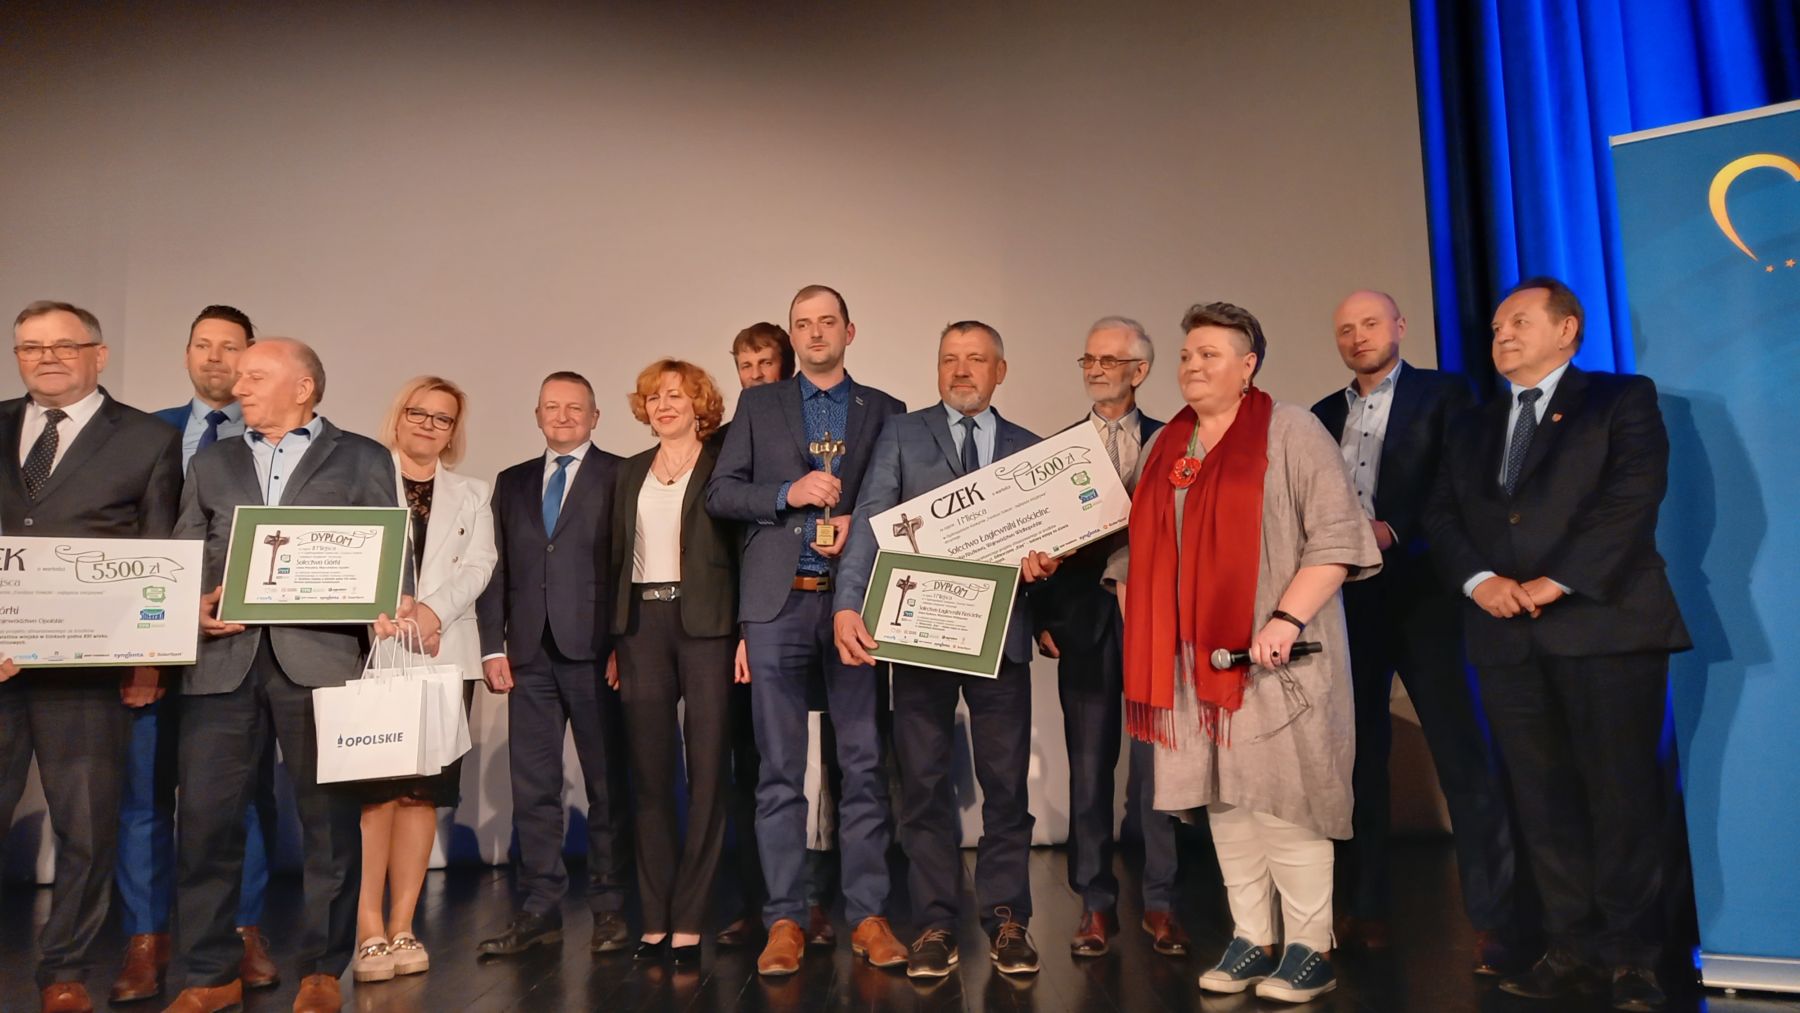 Rozstrzygnięcie etapu ogólnopolskiego konkursu Fundusz sołecki - najlepsza inicjatywa. Grupa laureatów stoi na scenie.